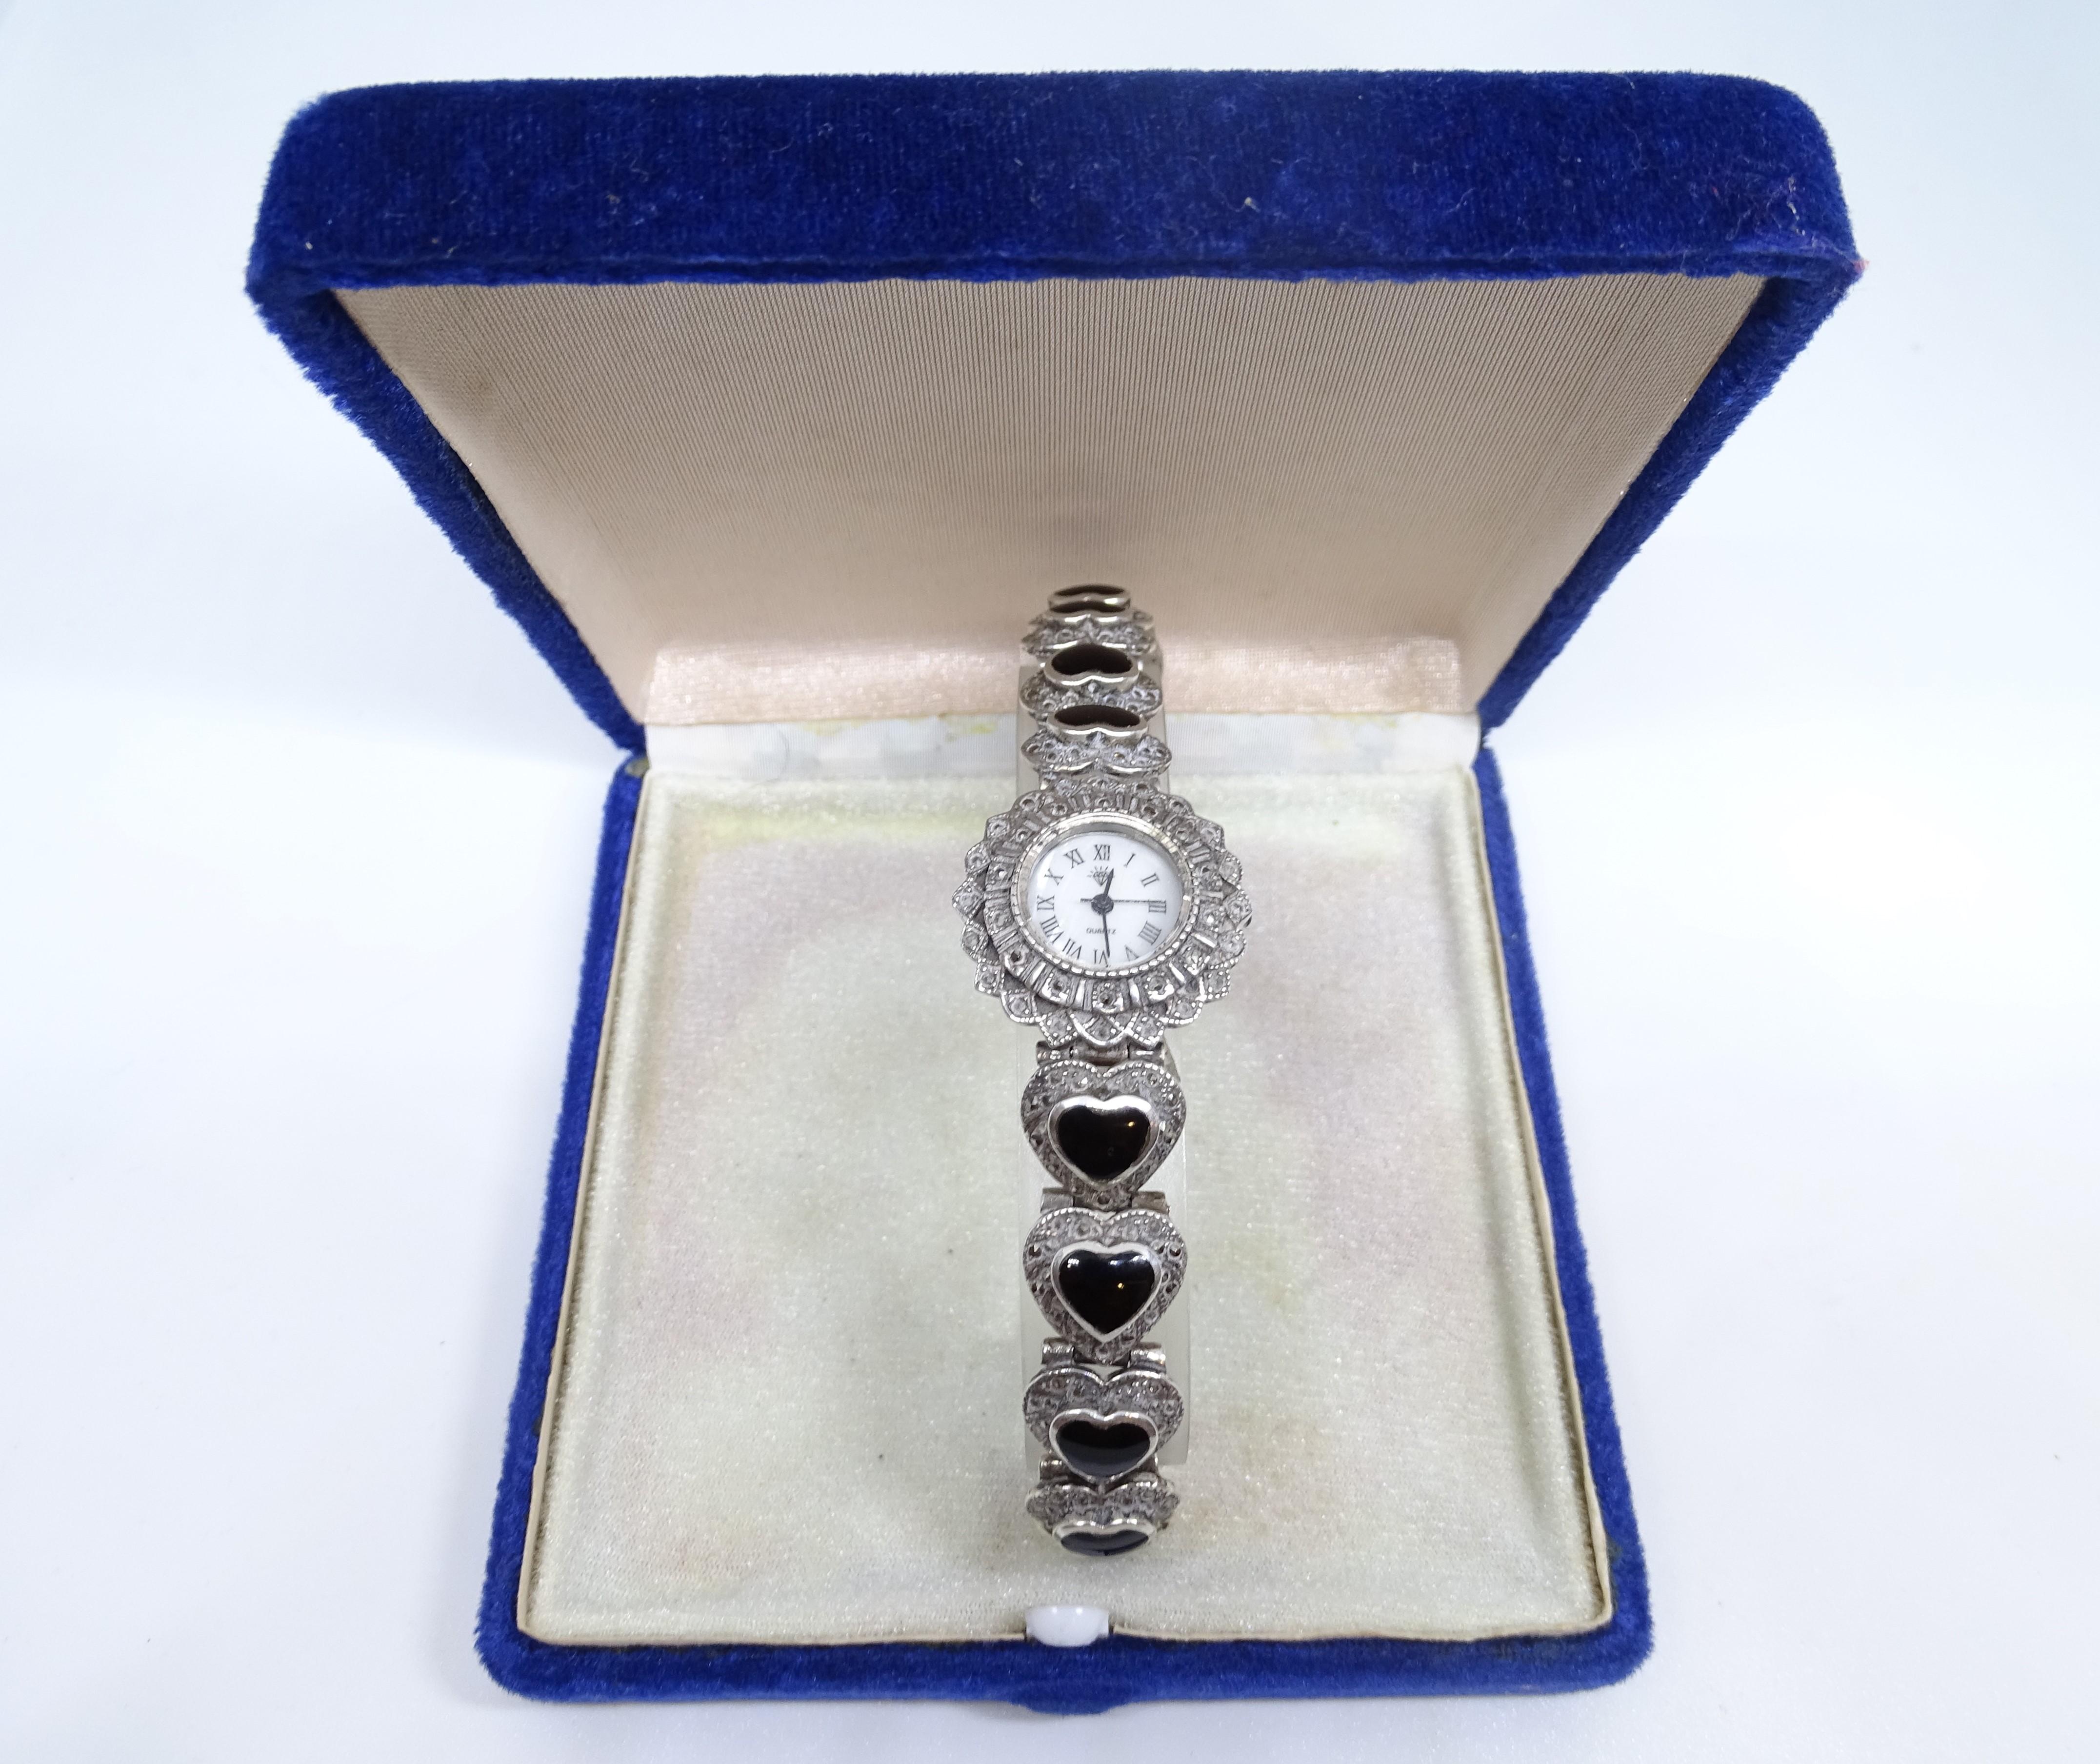 Silber- und Onyx-Uhr für Frauen - Vintage, s. XX
Japan Quarz-Uhrwerk 925
Zarte Uhr aus 925er Silber mit herzförmigen Onyx-Cabochons, die das Armband bilden. Sie verfügt über ein raffiniertes Gehäusedesign mit einer doppelten Lünette, von denen eine